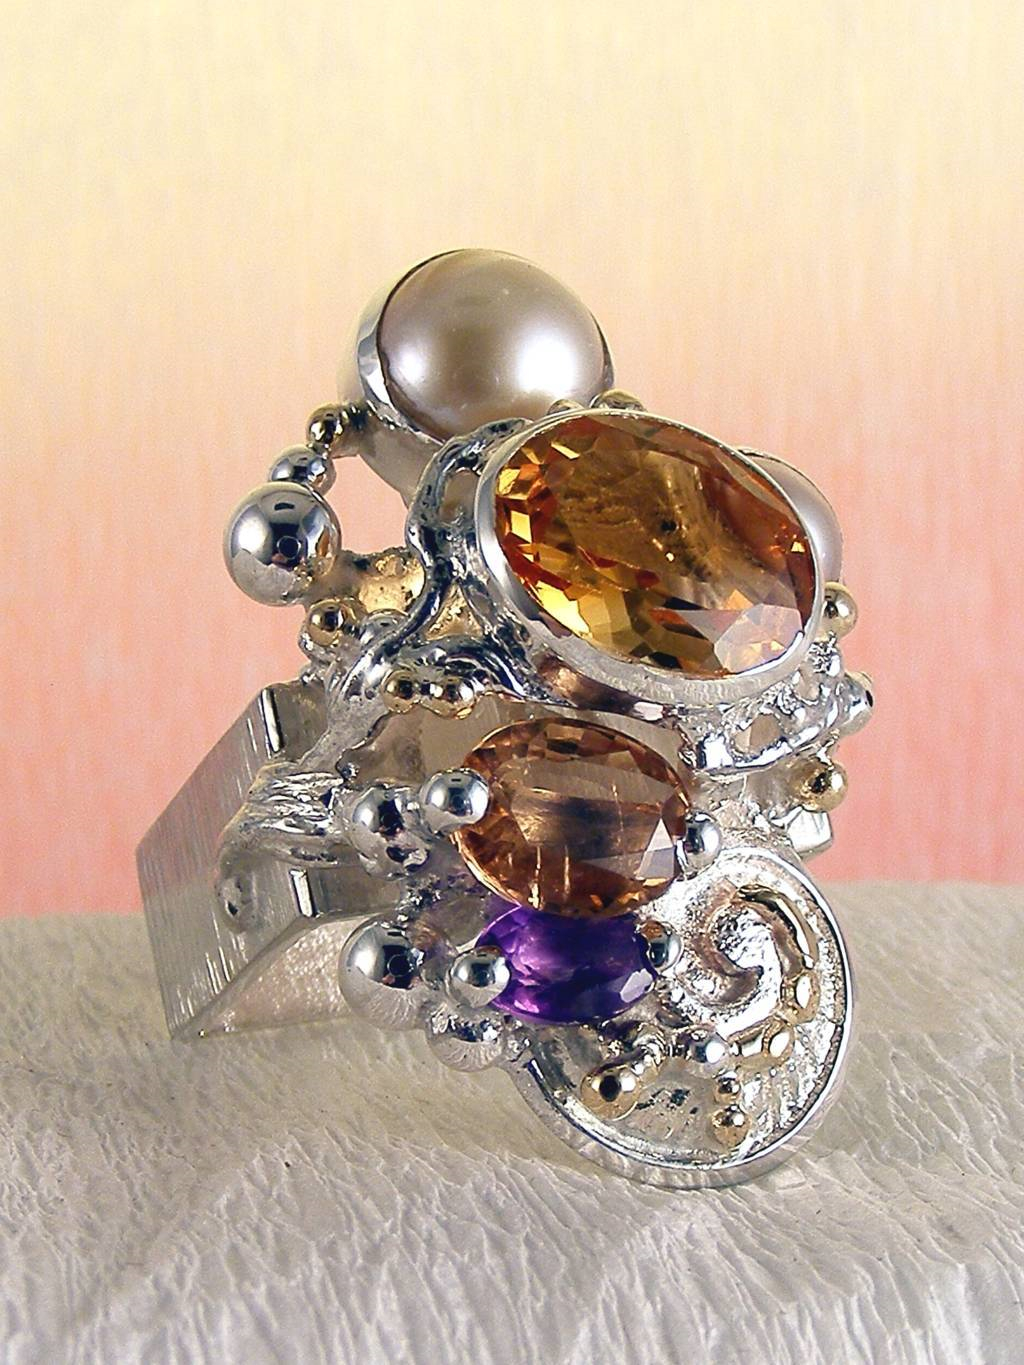 Gregory Pyra Piro kvadrátový prstýnek 4291, prsten s růžovým turmalínem a citrinem, prsten s ametystem a růžovým turmalínem, prsten s citrinem a perlami, prsten s ametystem a perlami, prsten s turmalínem a perlami, šperky s doručením k vám domů v Ostravě, šperky s doručením k vám domů v Brně, šperky prodávané v galeriích, prsten vyrobený ručně